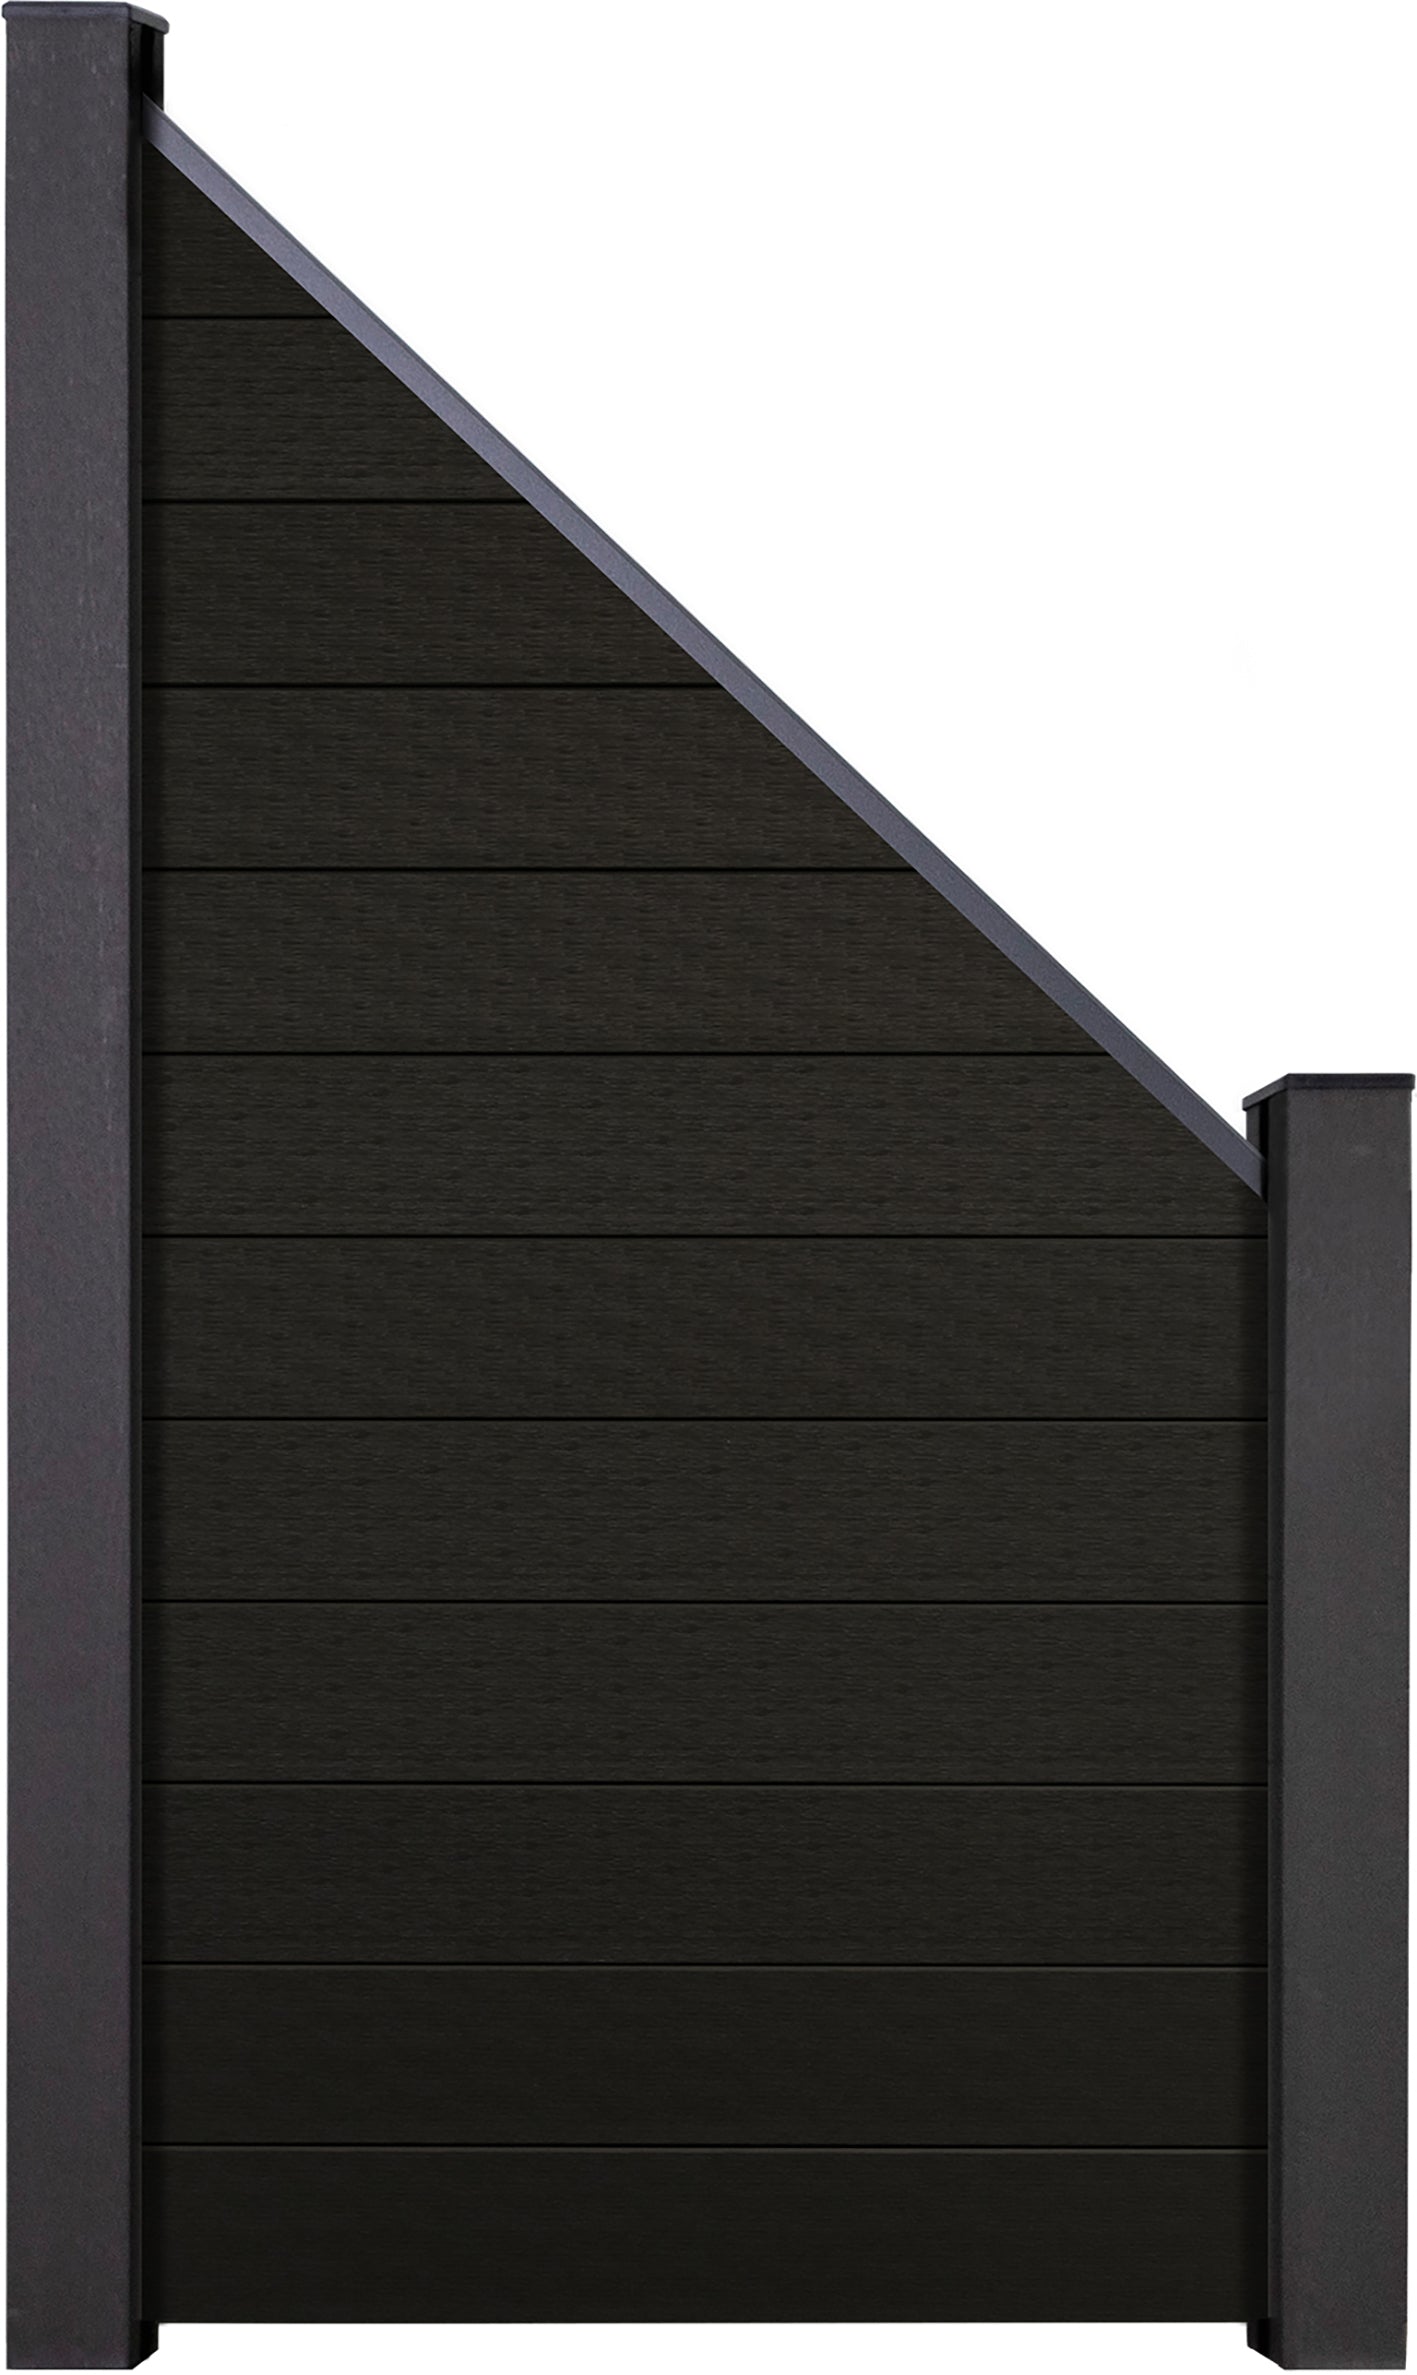 Schwarz co-extrudiert, schrag, 90x180/90 cm